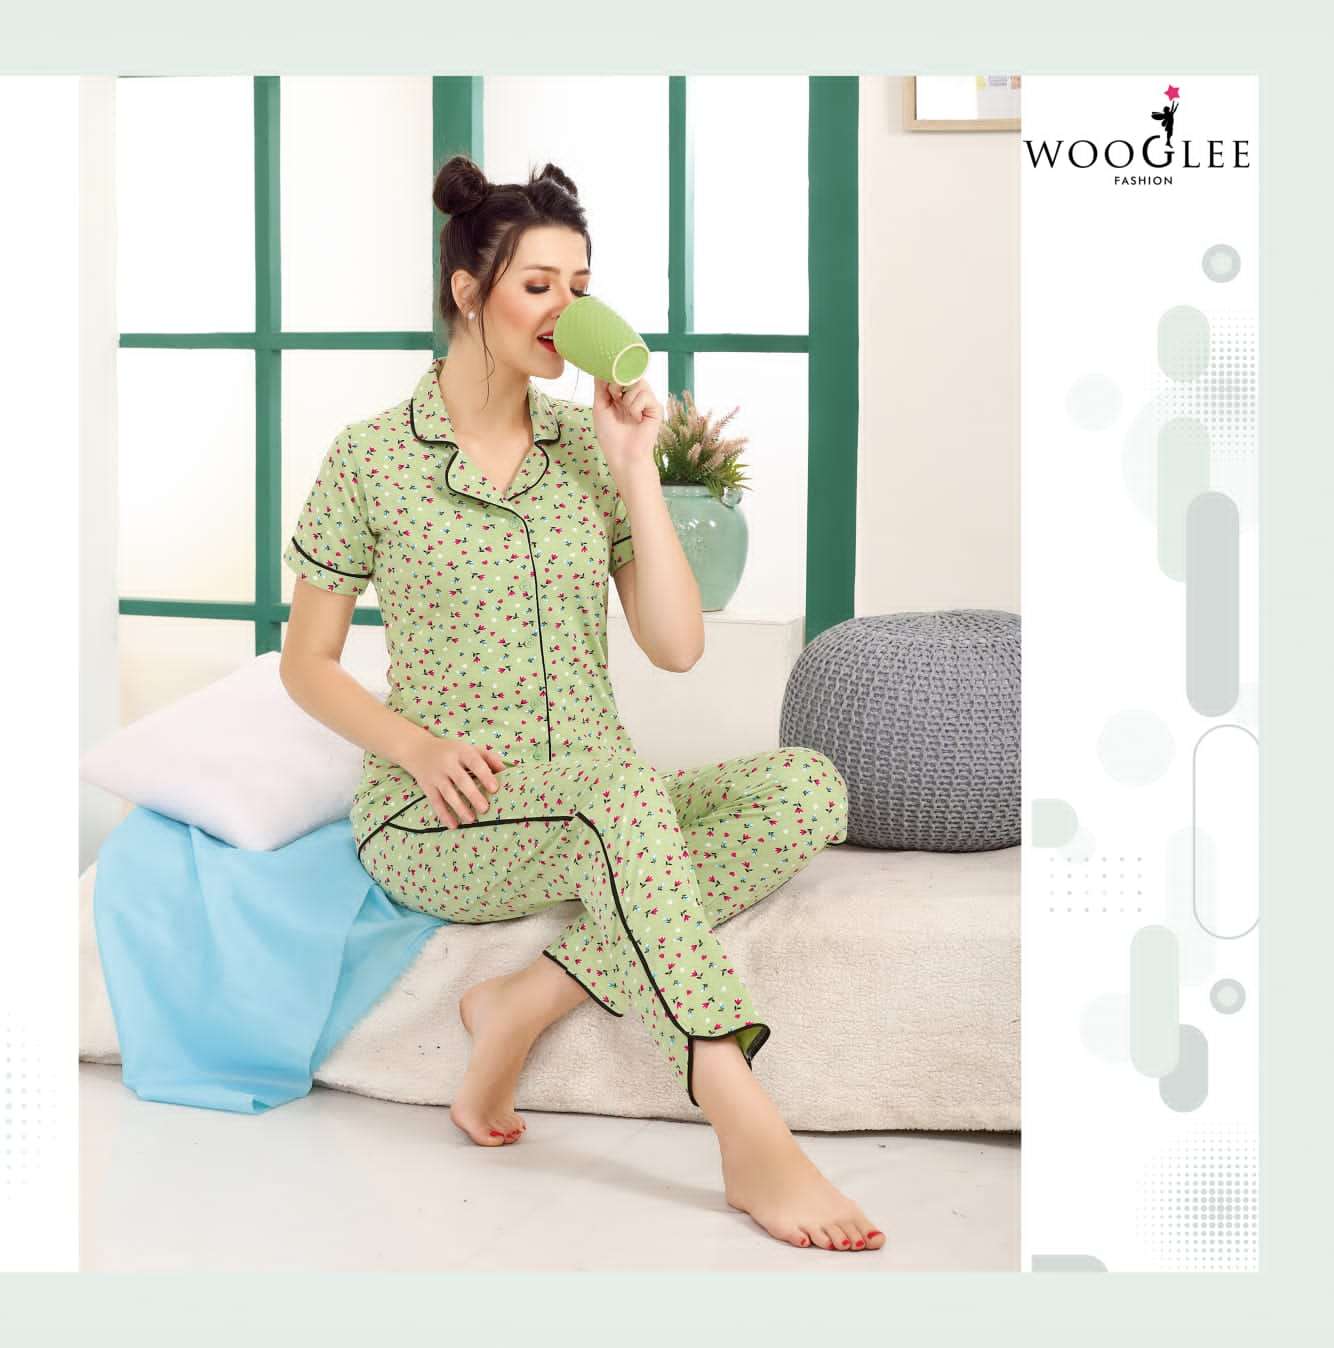 wooglee night out hosiery cotton wear night dress online purchasing wholesale surat 